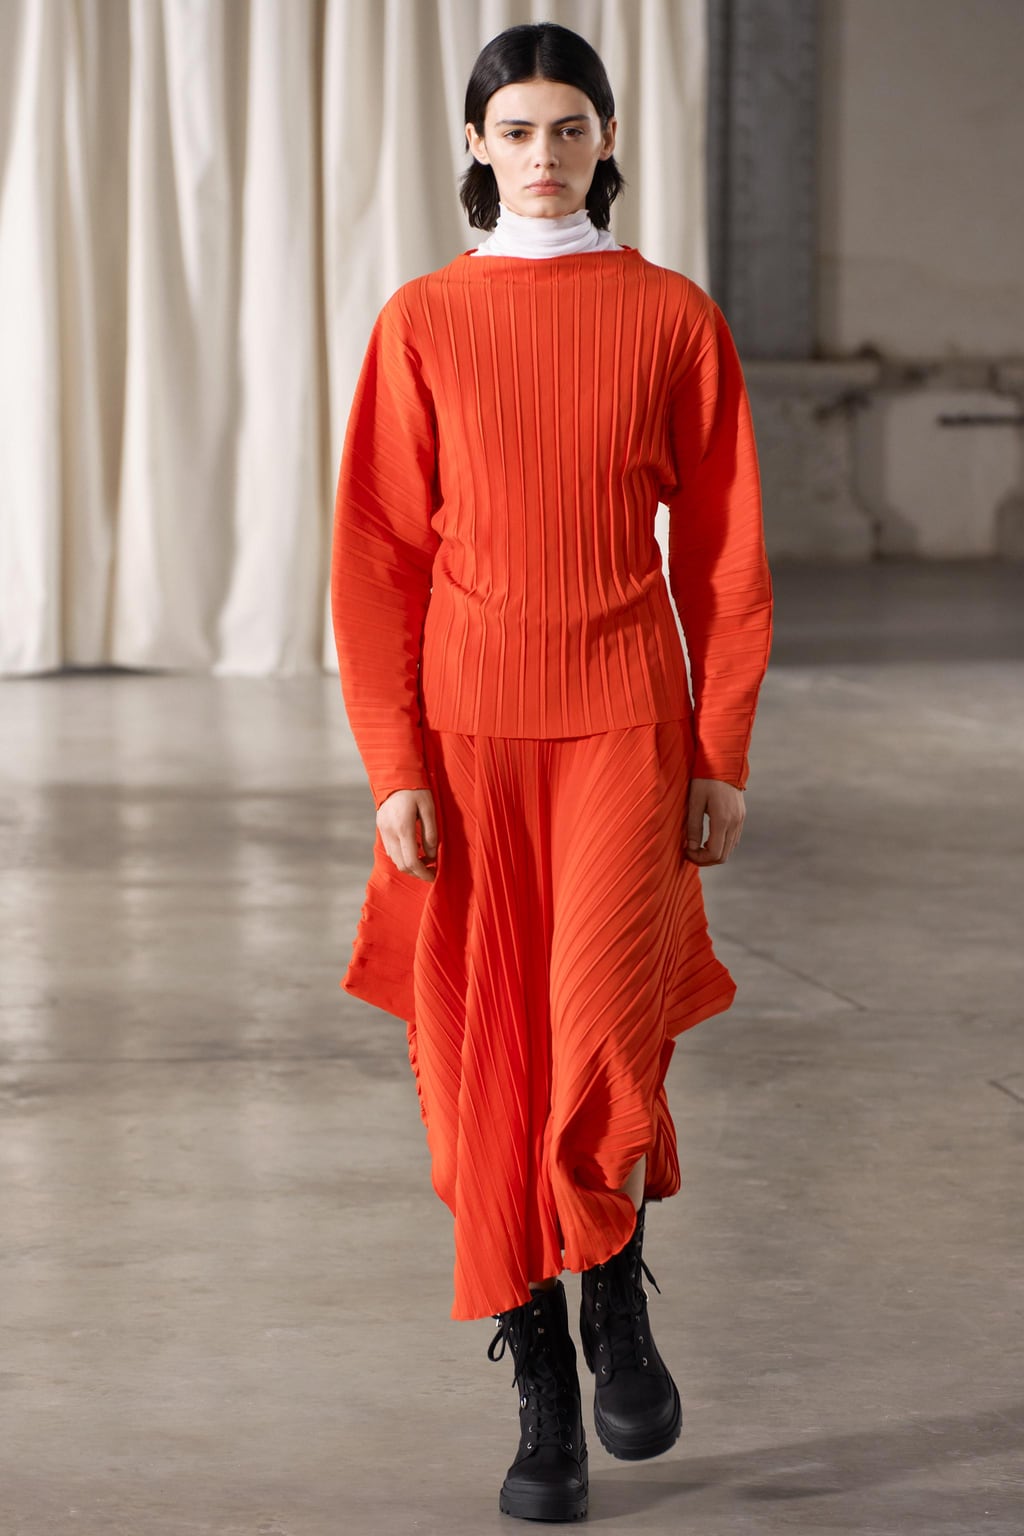 Асимметричная юбка со складками ZARA, красный апельсин юбка женская плиссированная длинная с завышенной талией